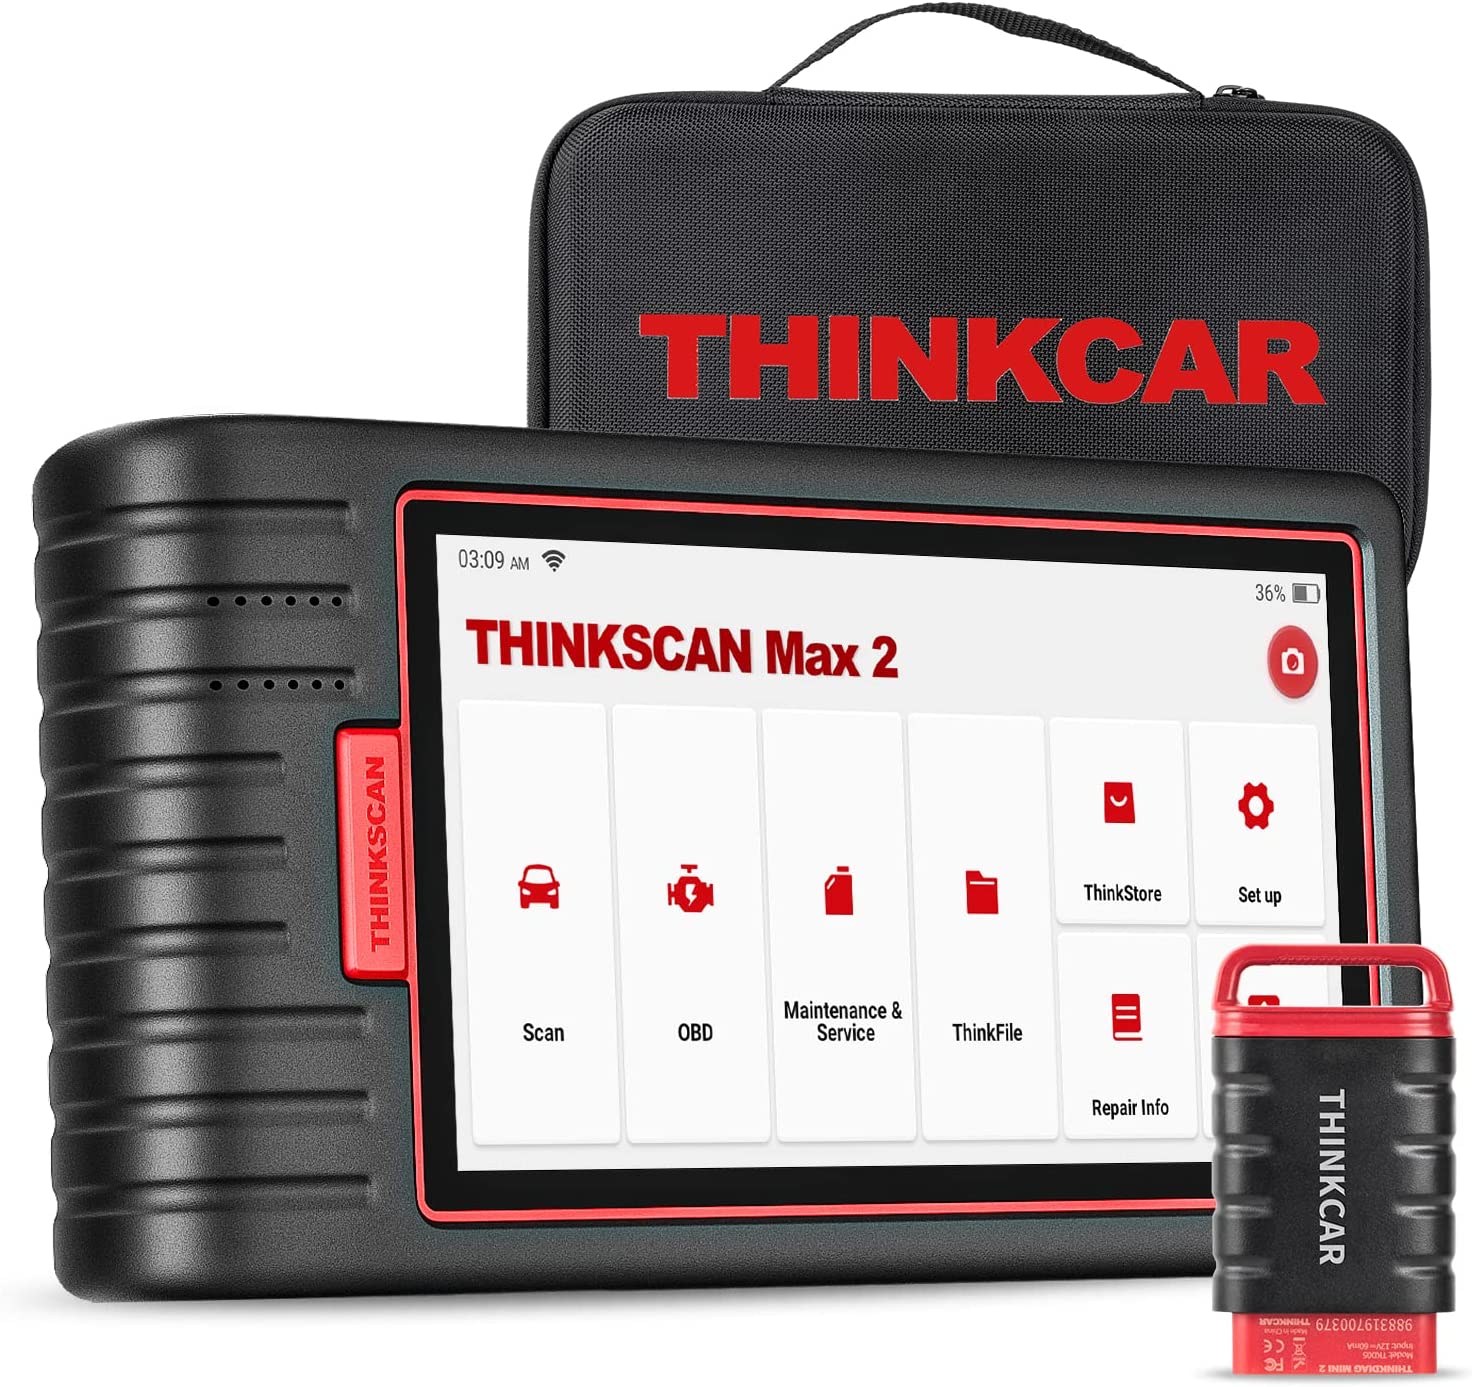 THINKCAR ThinkScan Max 2